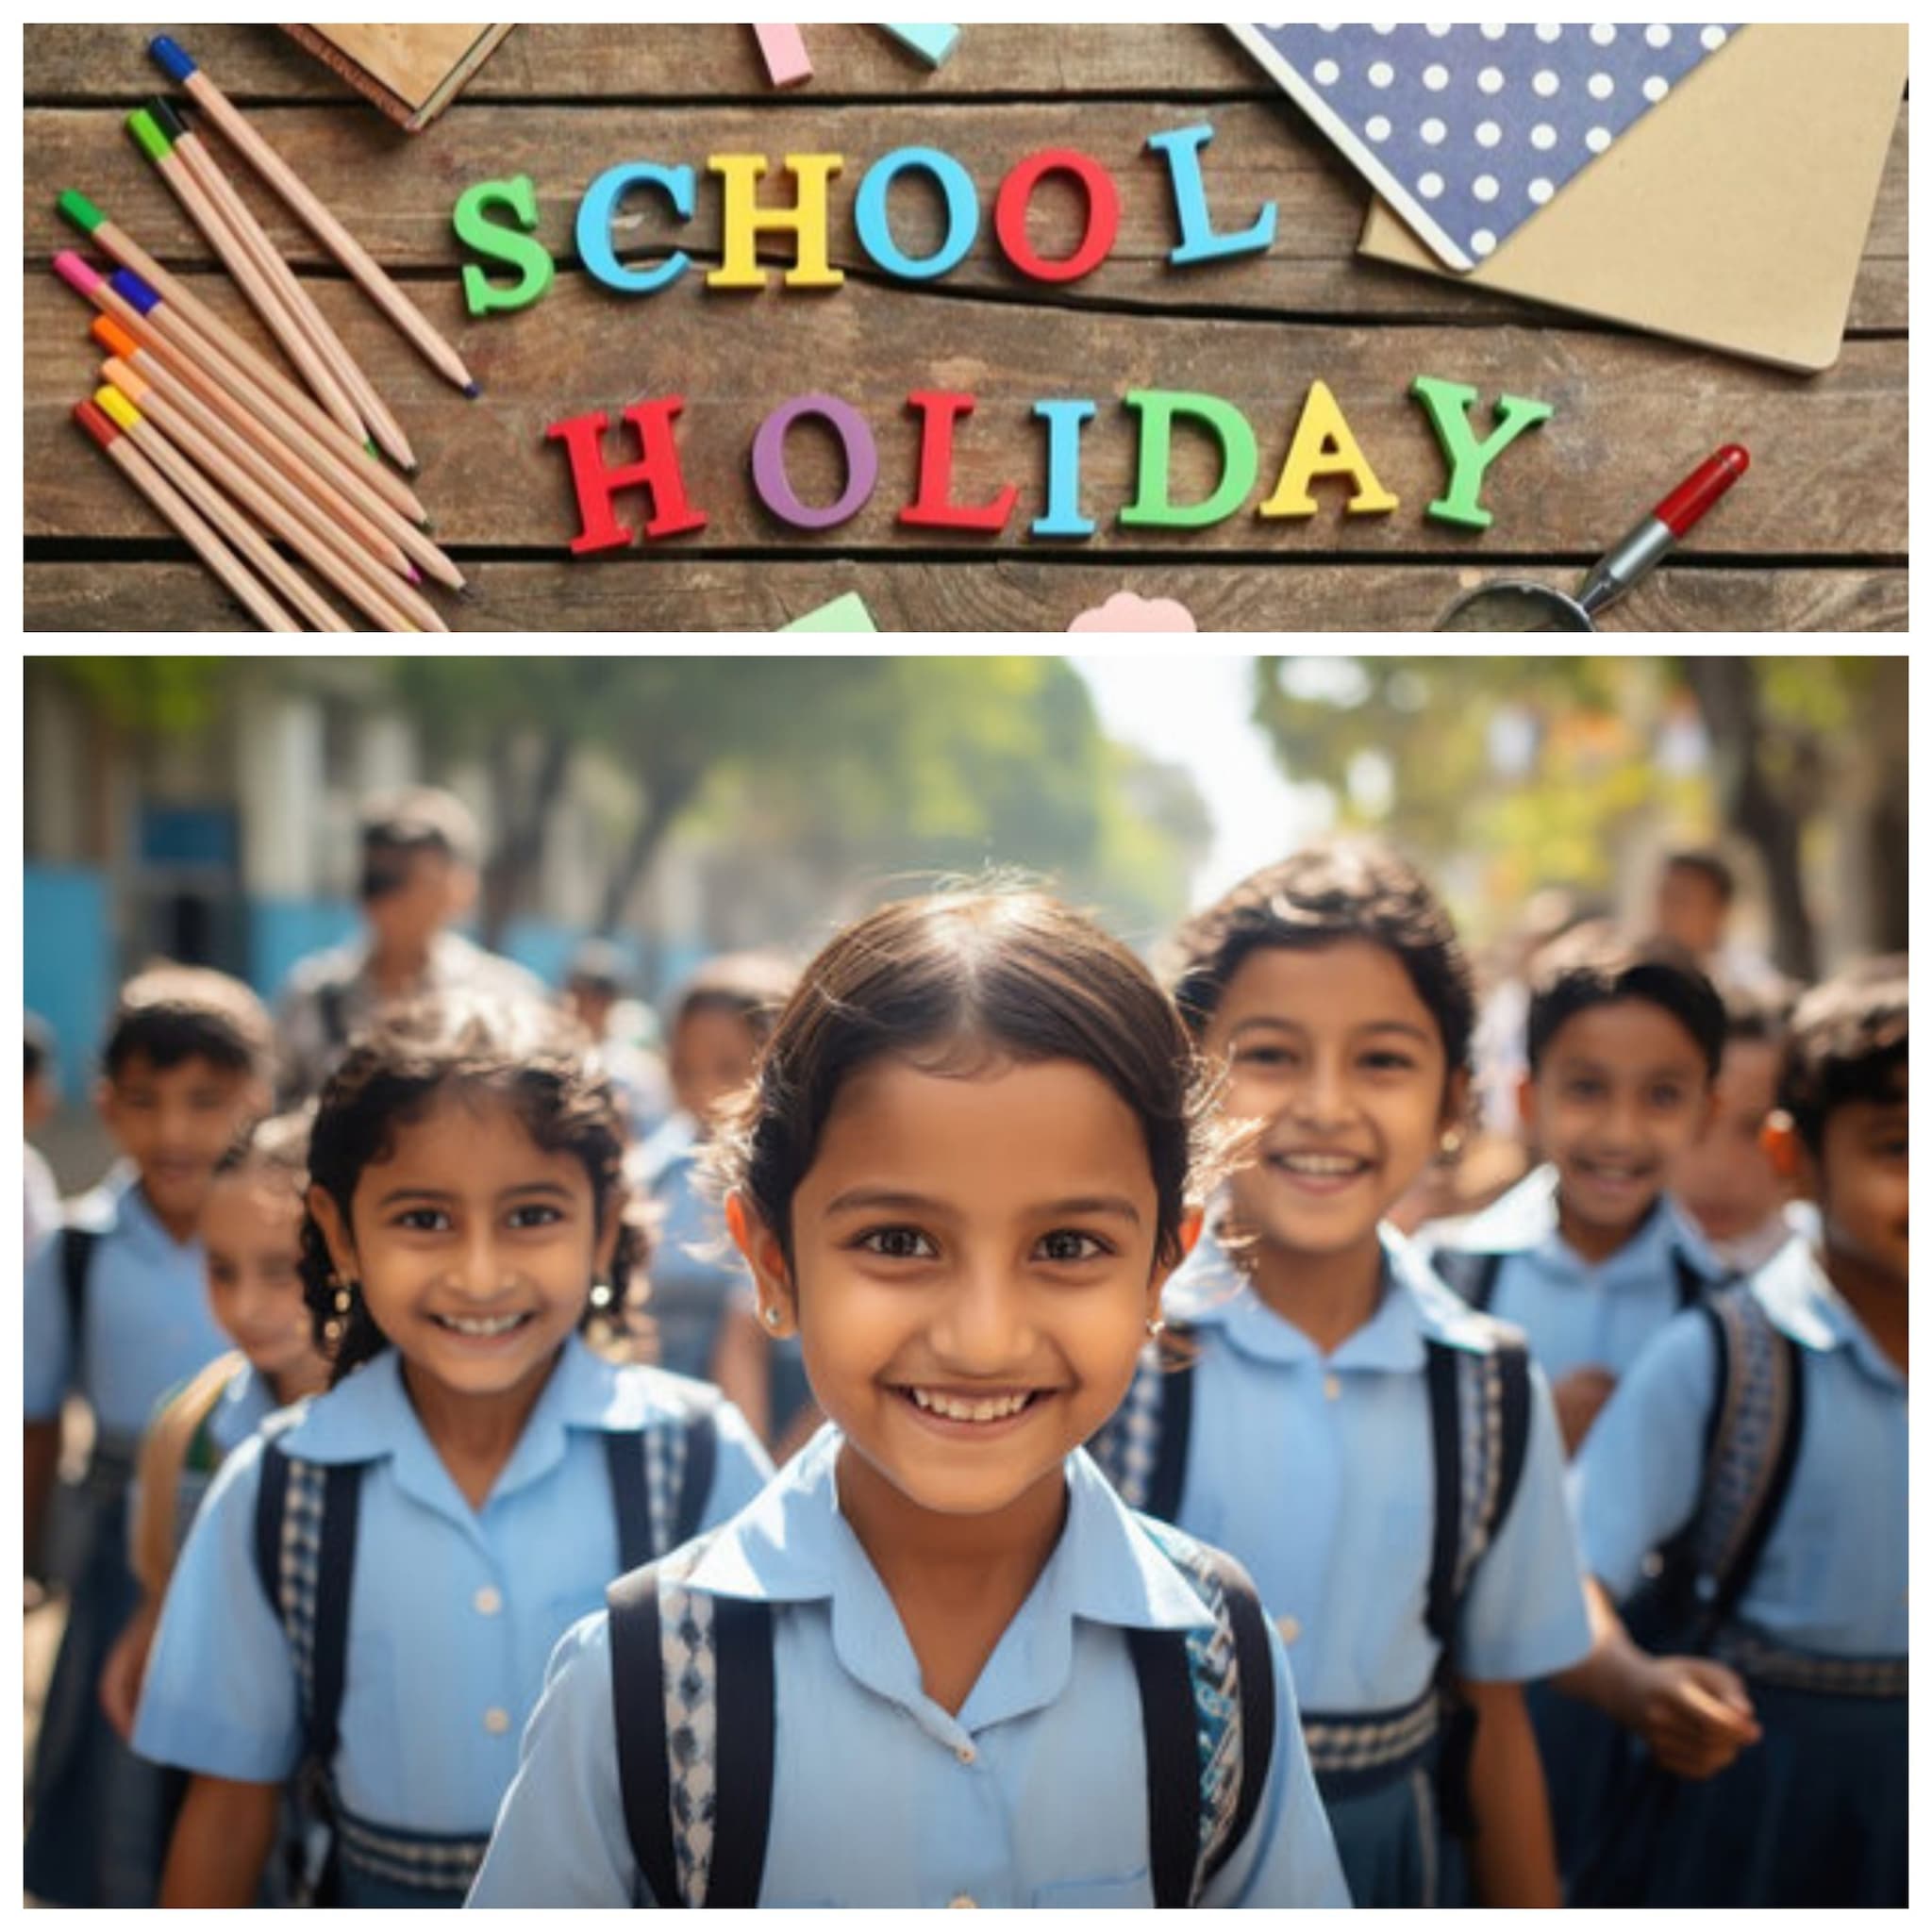 दिल्ली के सरकारी स्कूलों में छुट्टी की घोषणा, प्राइवेट भी जल्द होंगे बंद